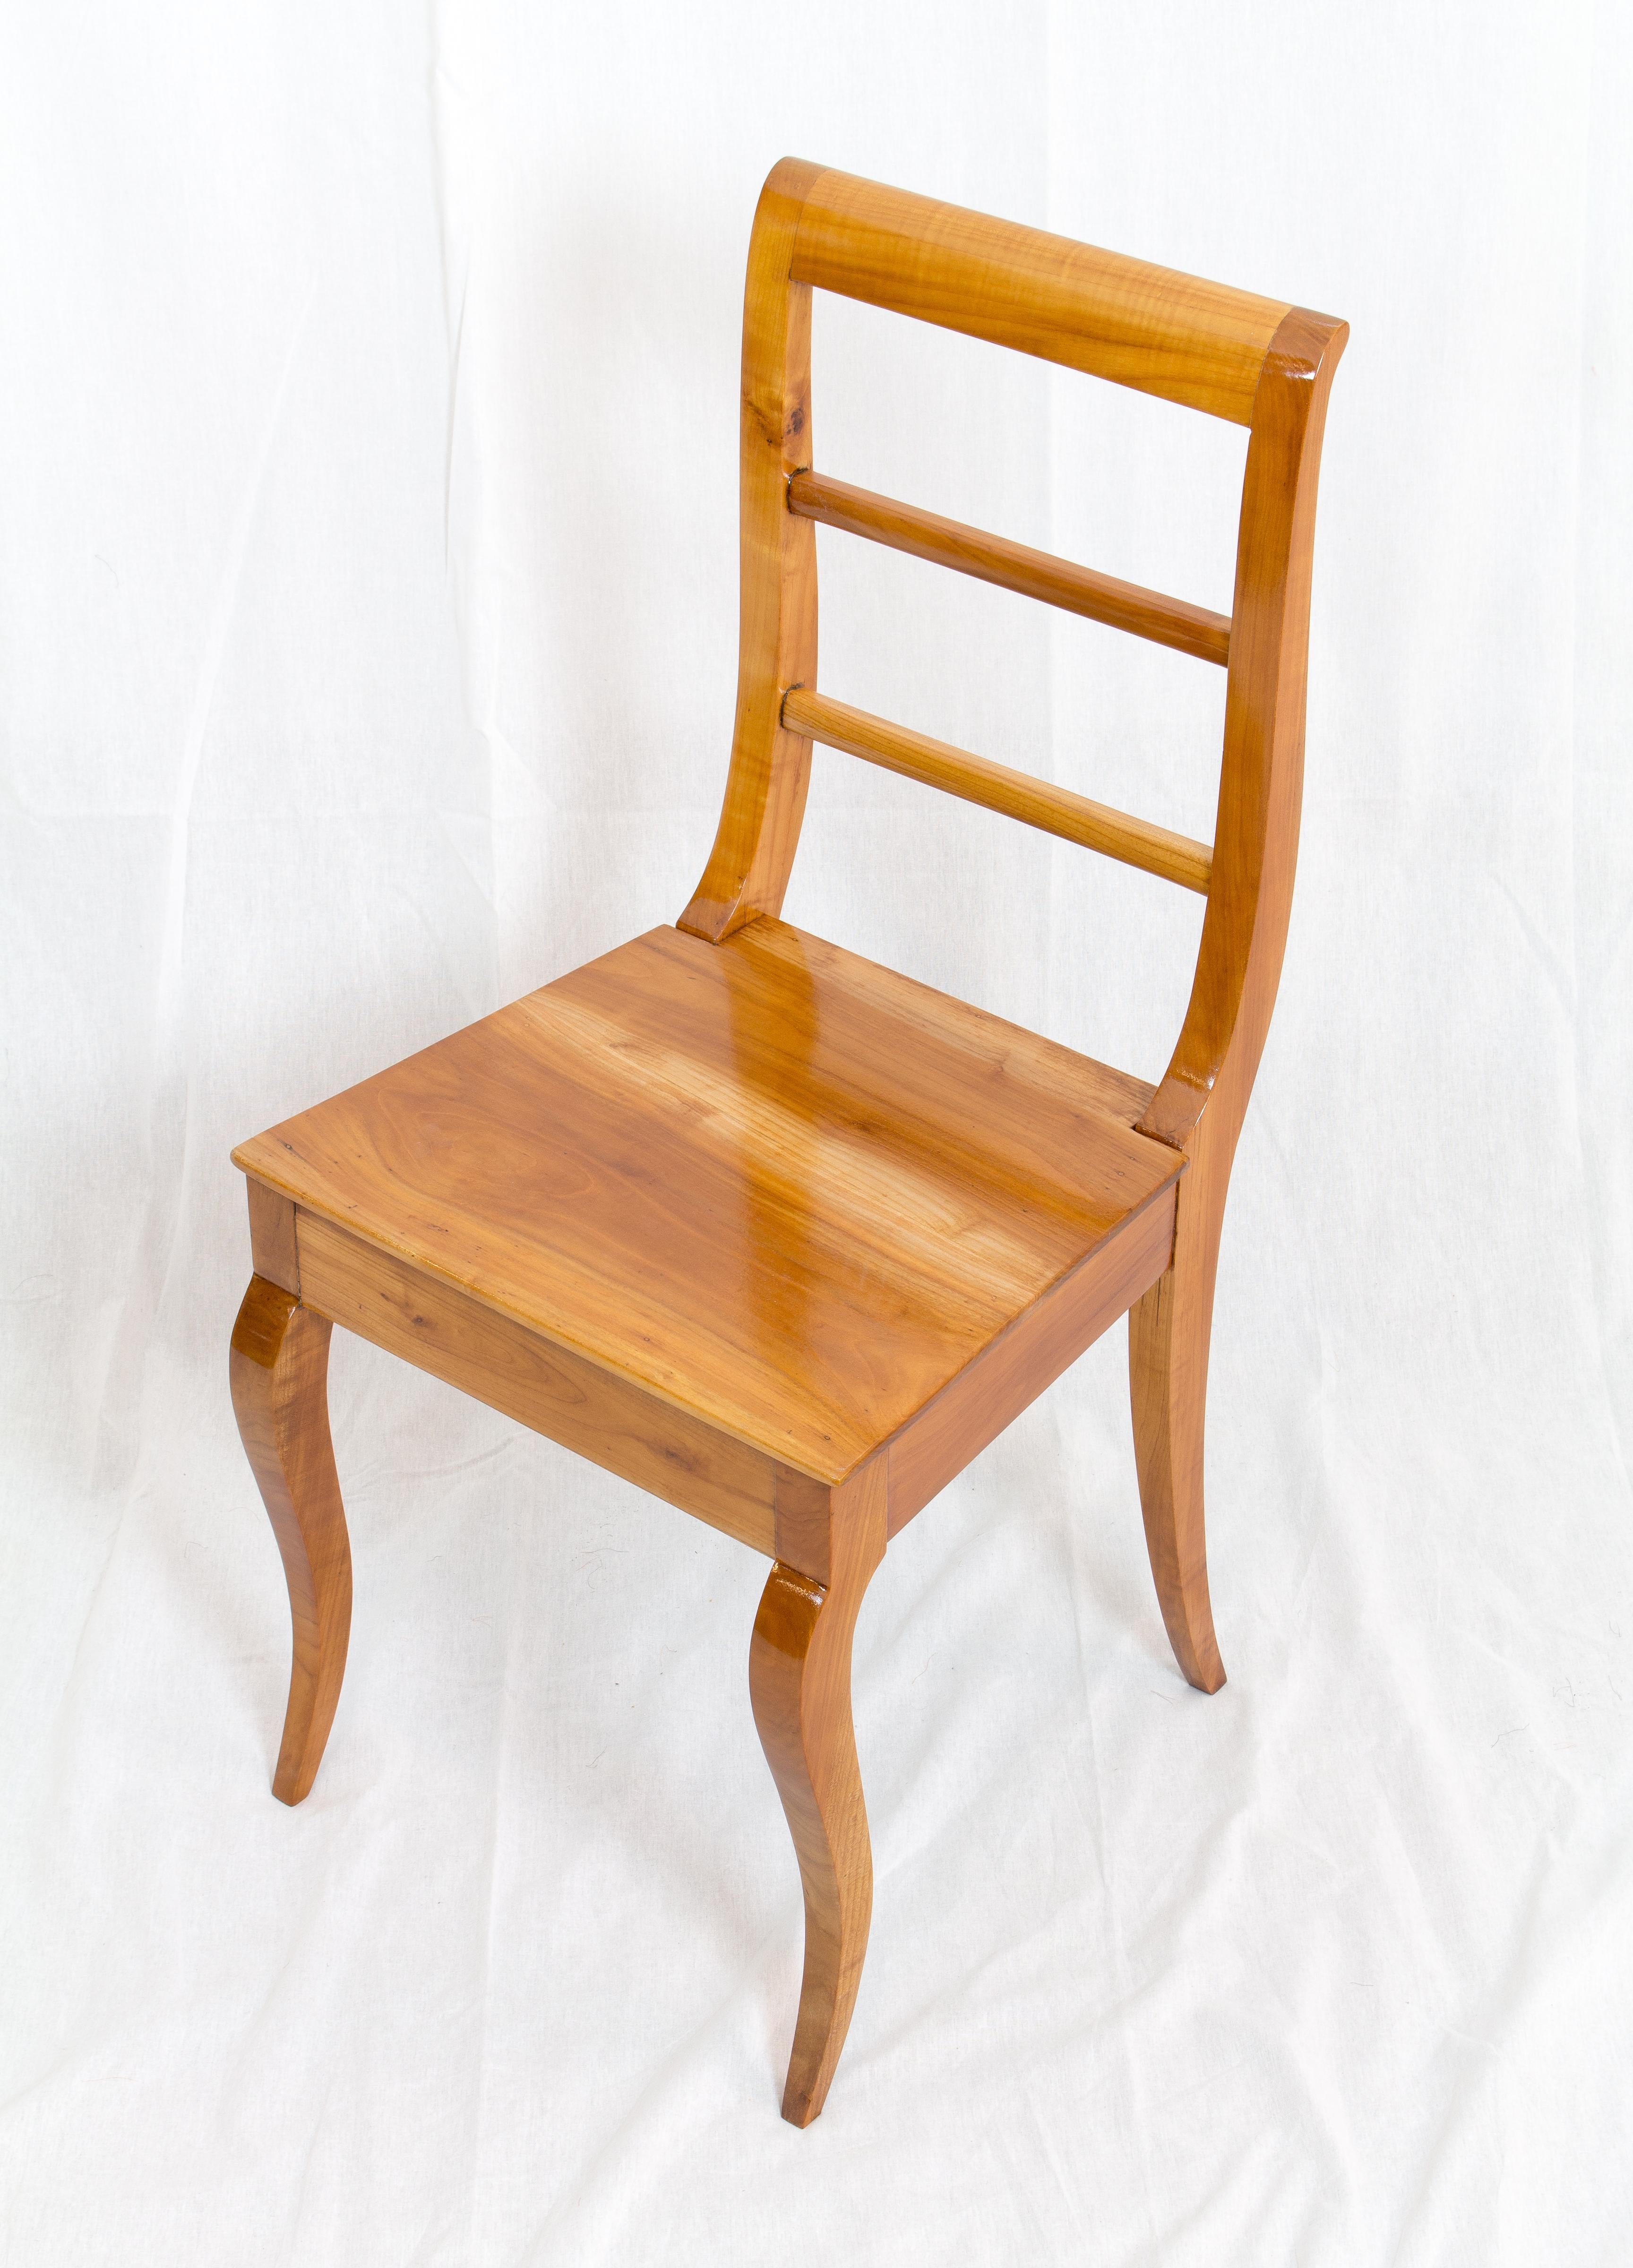 Polished 19th Century Biedermeier Cherrywood Chair